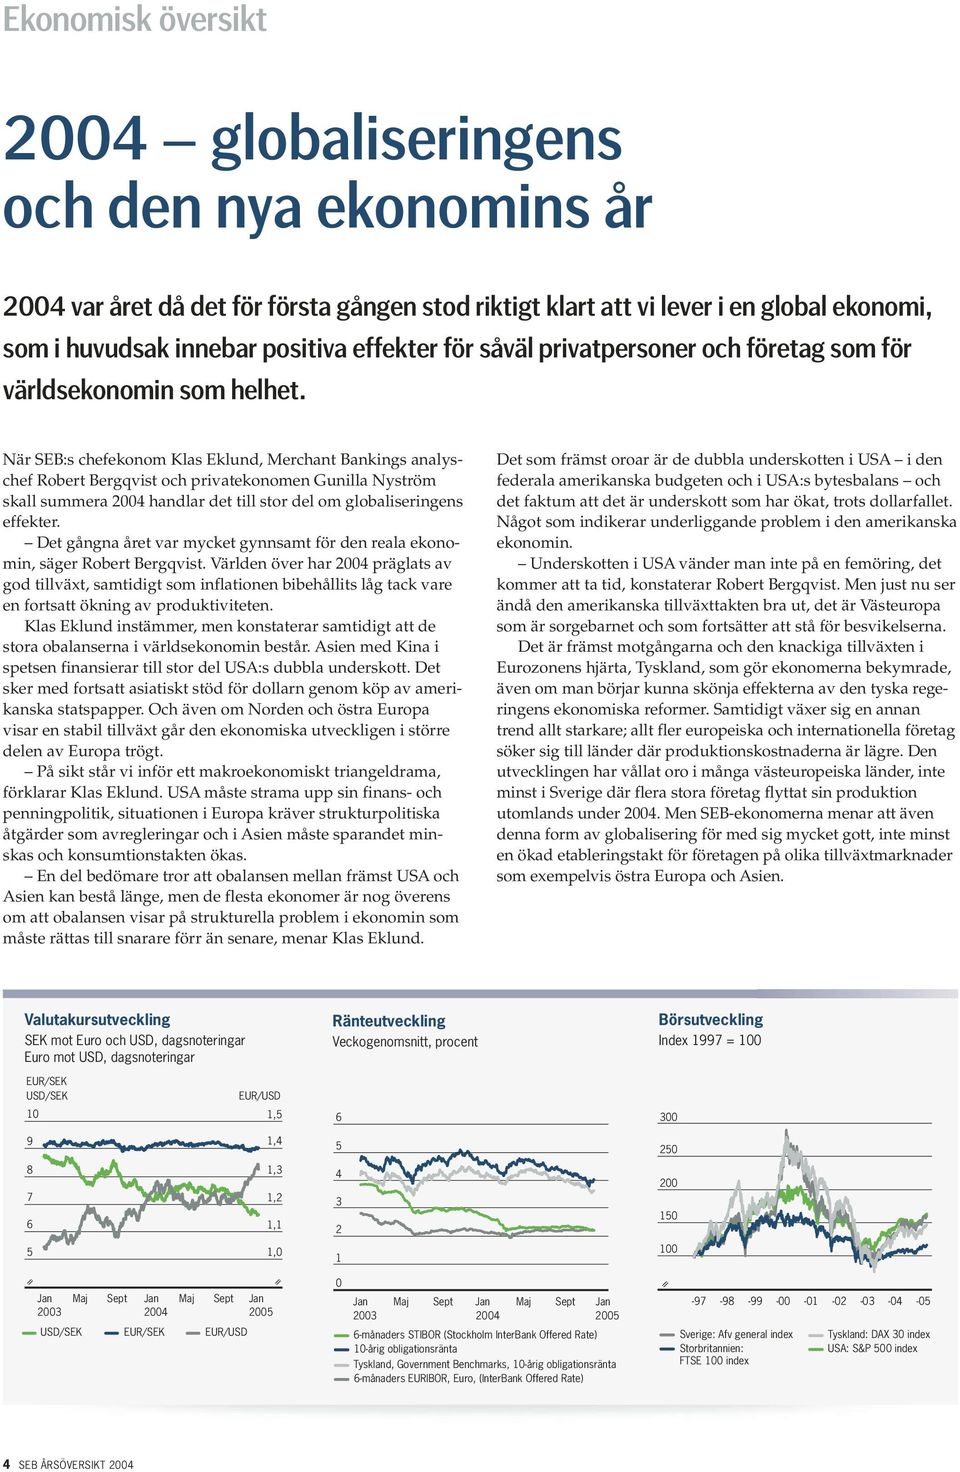 När SEB:s chefekonom Klas Eklund, Merchant Bankings analyschef Robert Bergqvist och privatekonomen Gunilla Nyström skall summera 24 handlar det till stor del om globaliseringens effekter.